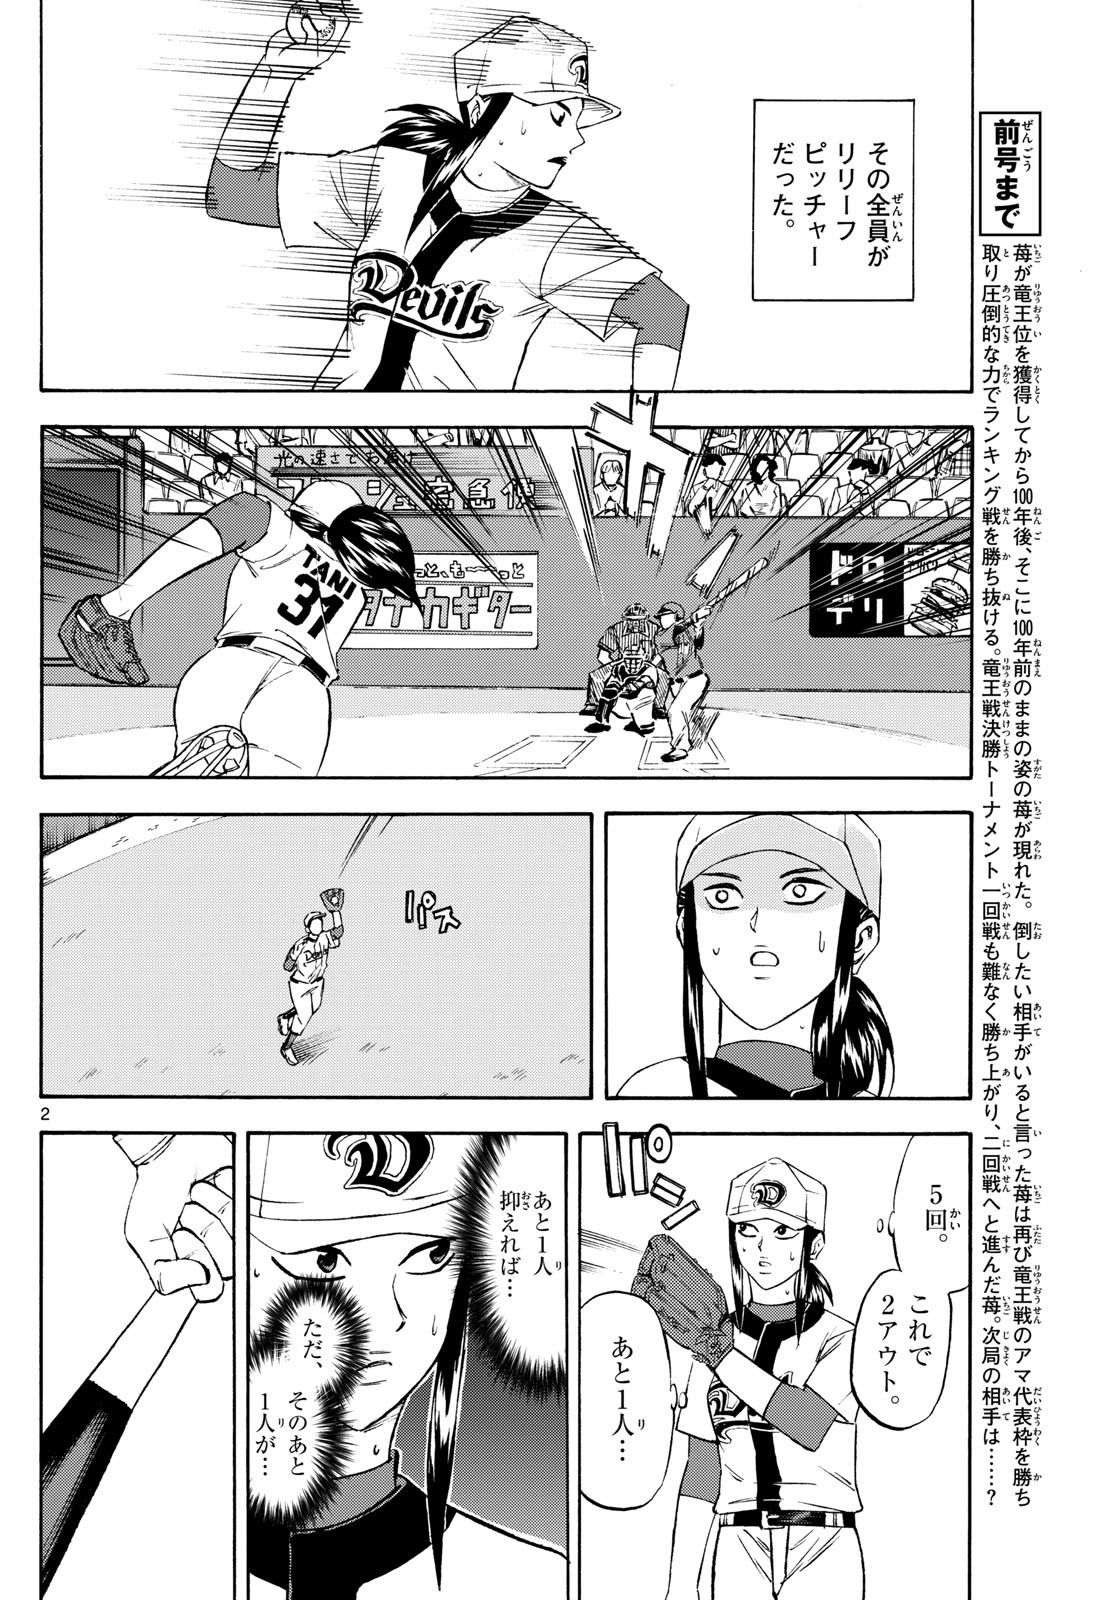 Ryu-to-Ichigo - Chapter 197 - Page 2